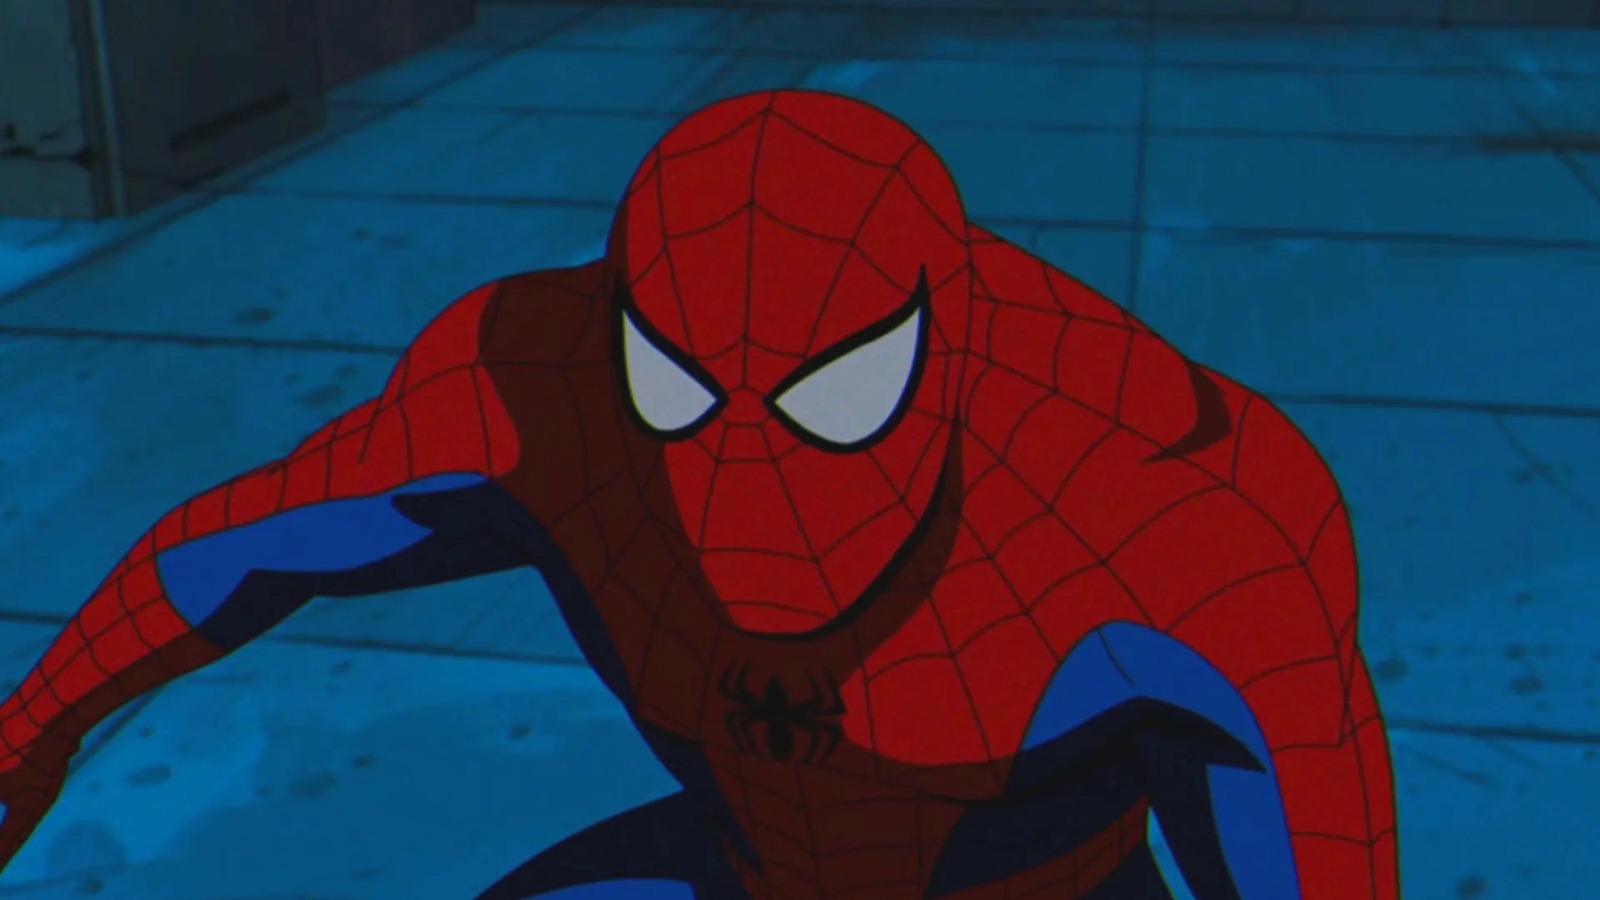 Финал первого сезона «Людей Икс '97» раскрывает тайну Человека-паука длиной в десятилетия